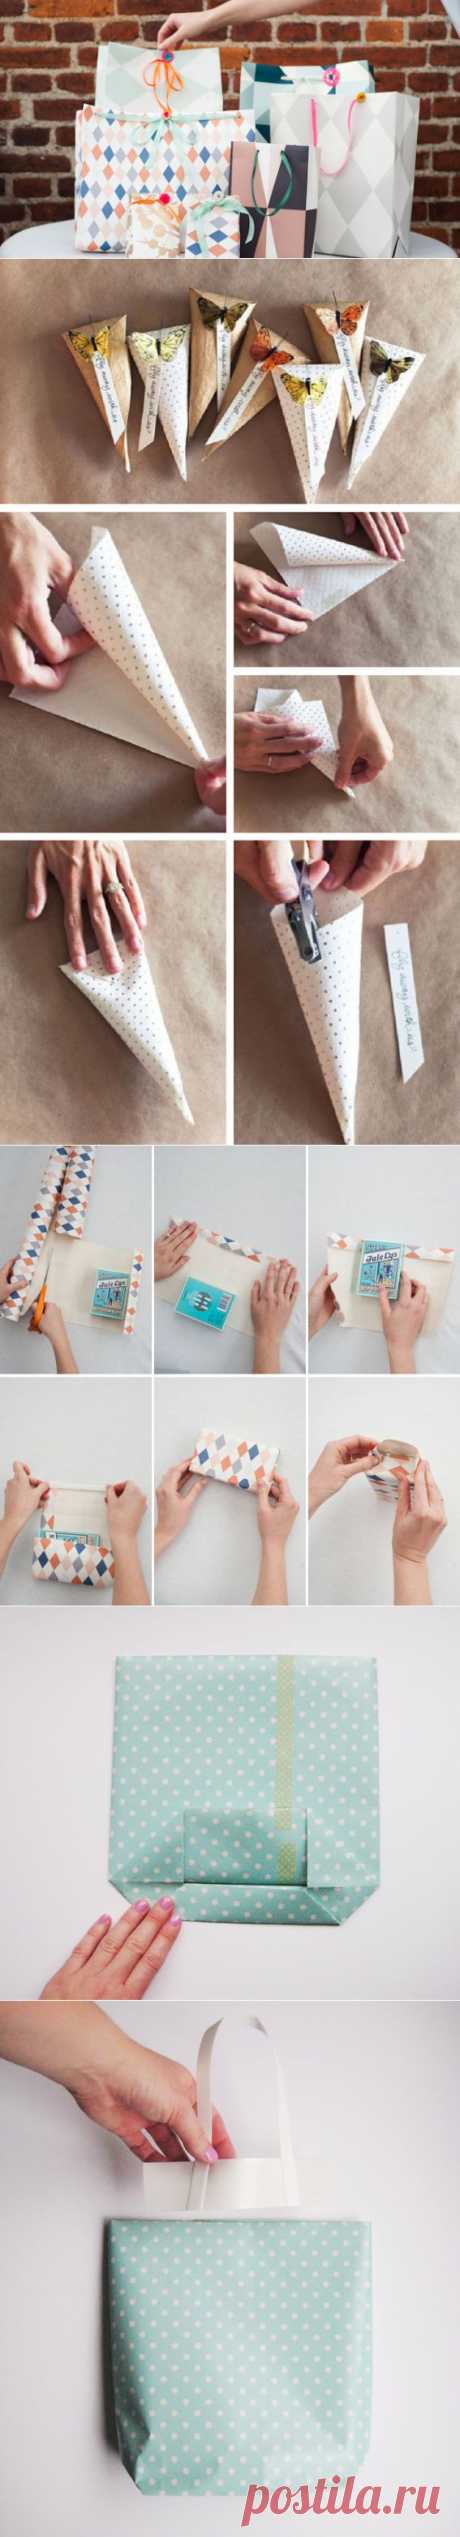 Как сделать оригинальные подарочные пакеты своими руками